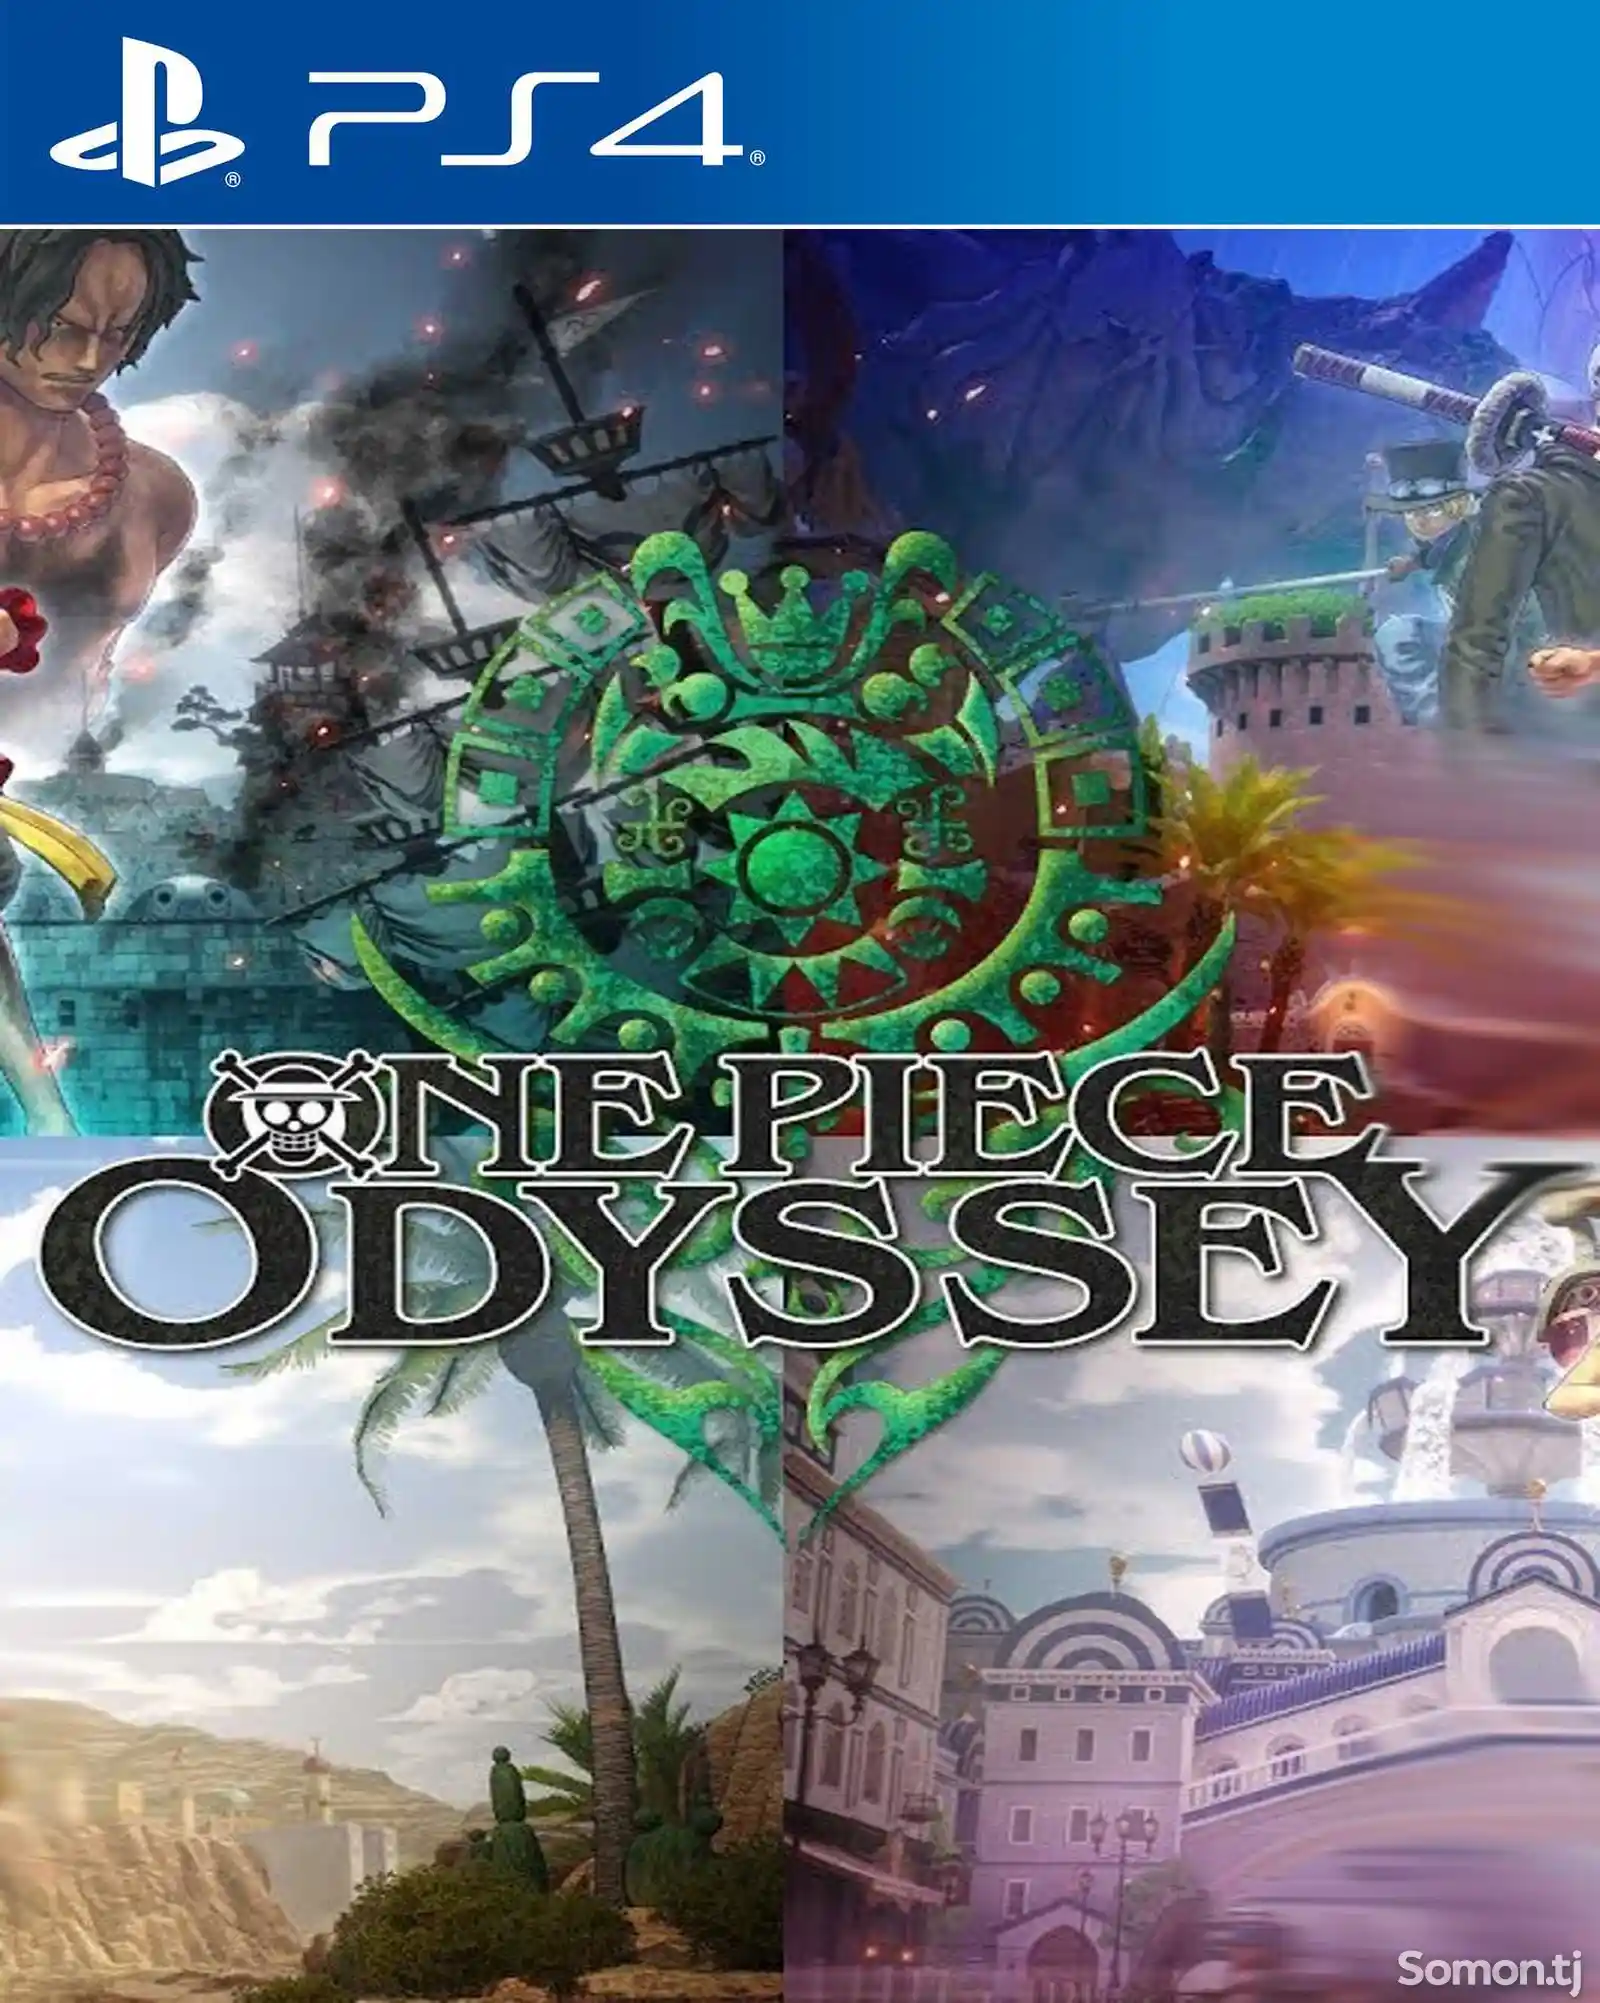 Игра One piece odyssey для PS-4 / 5.05 / 6.72 / 7.02 / 7.55 / 9.00 /-1